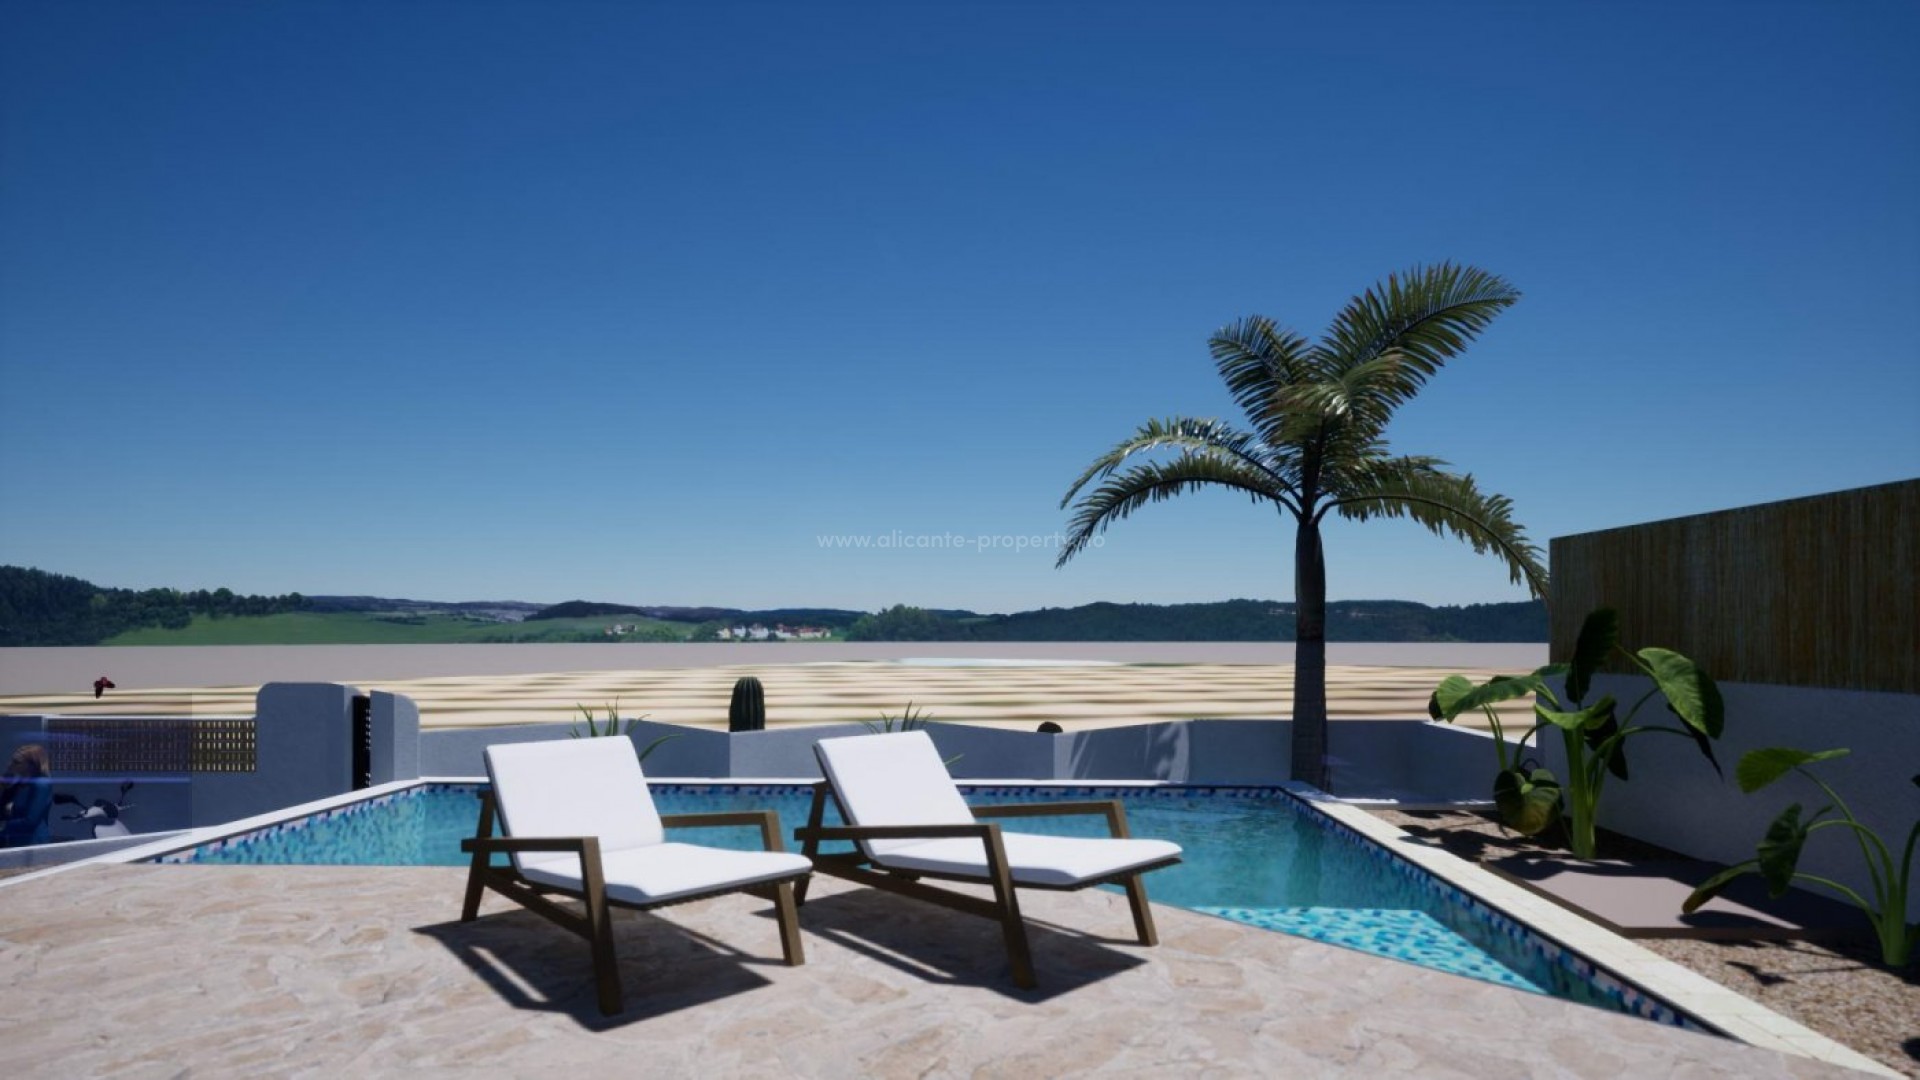 VIlla i Polop Ibiza stil,3 soverom (walk-in garderobeskap, eget bad), 2 bad, basseng, solarium, terrasser og strålende utsikt. Mulighet for kjeller 